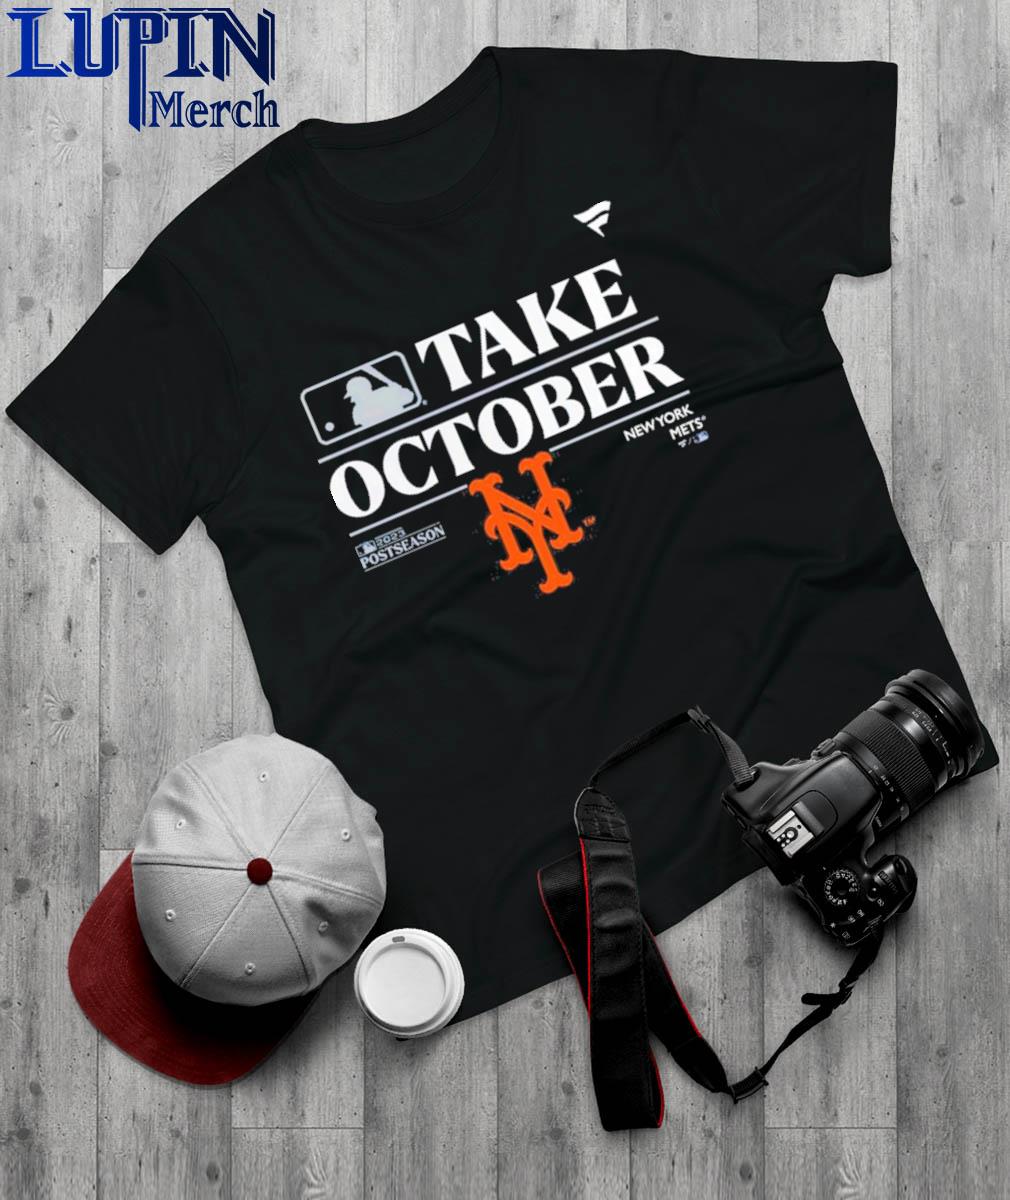 Official New York Mets Postseason 2022 shirt, hoodie, longsleeve